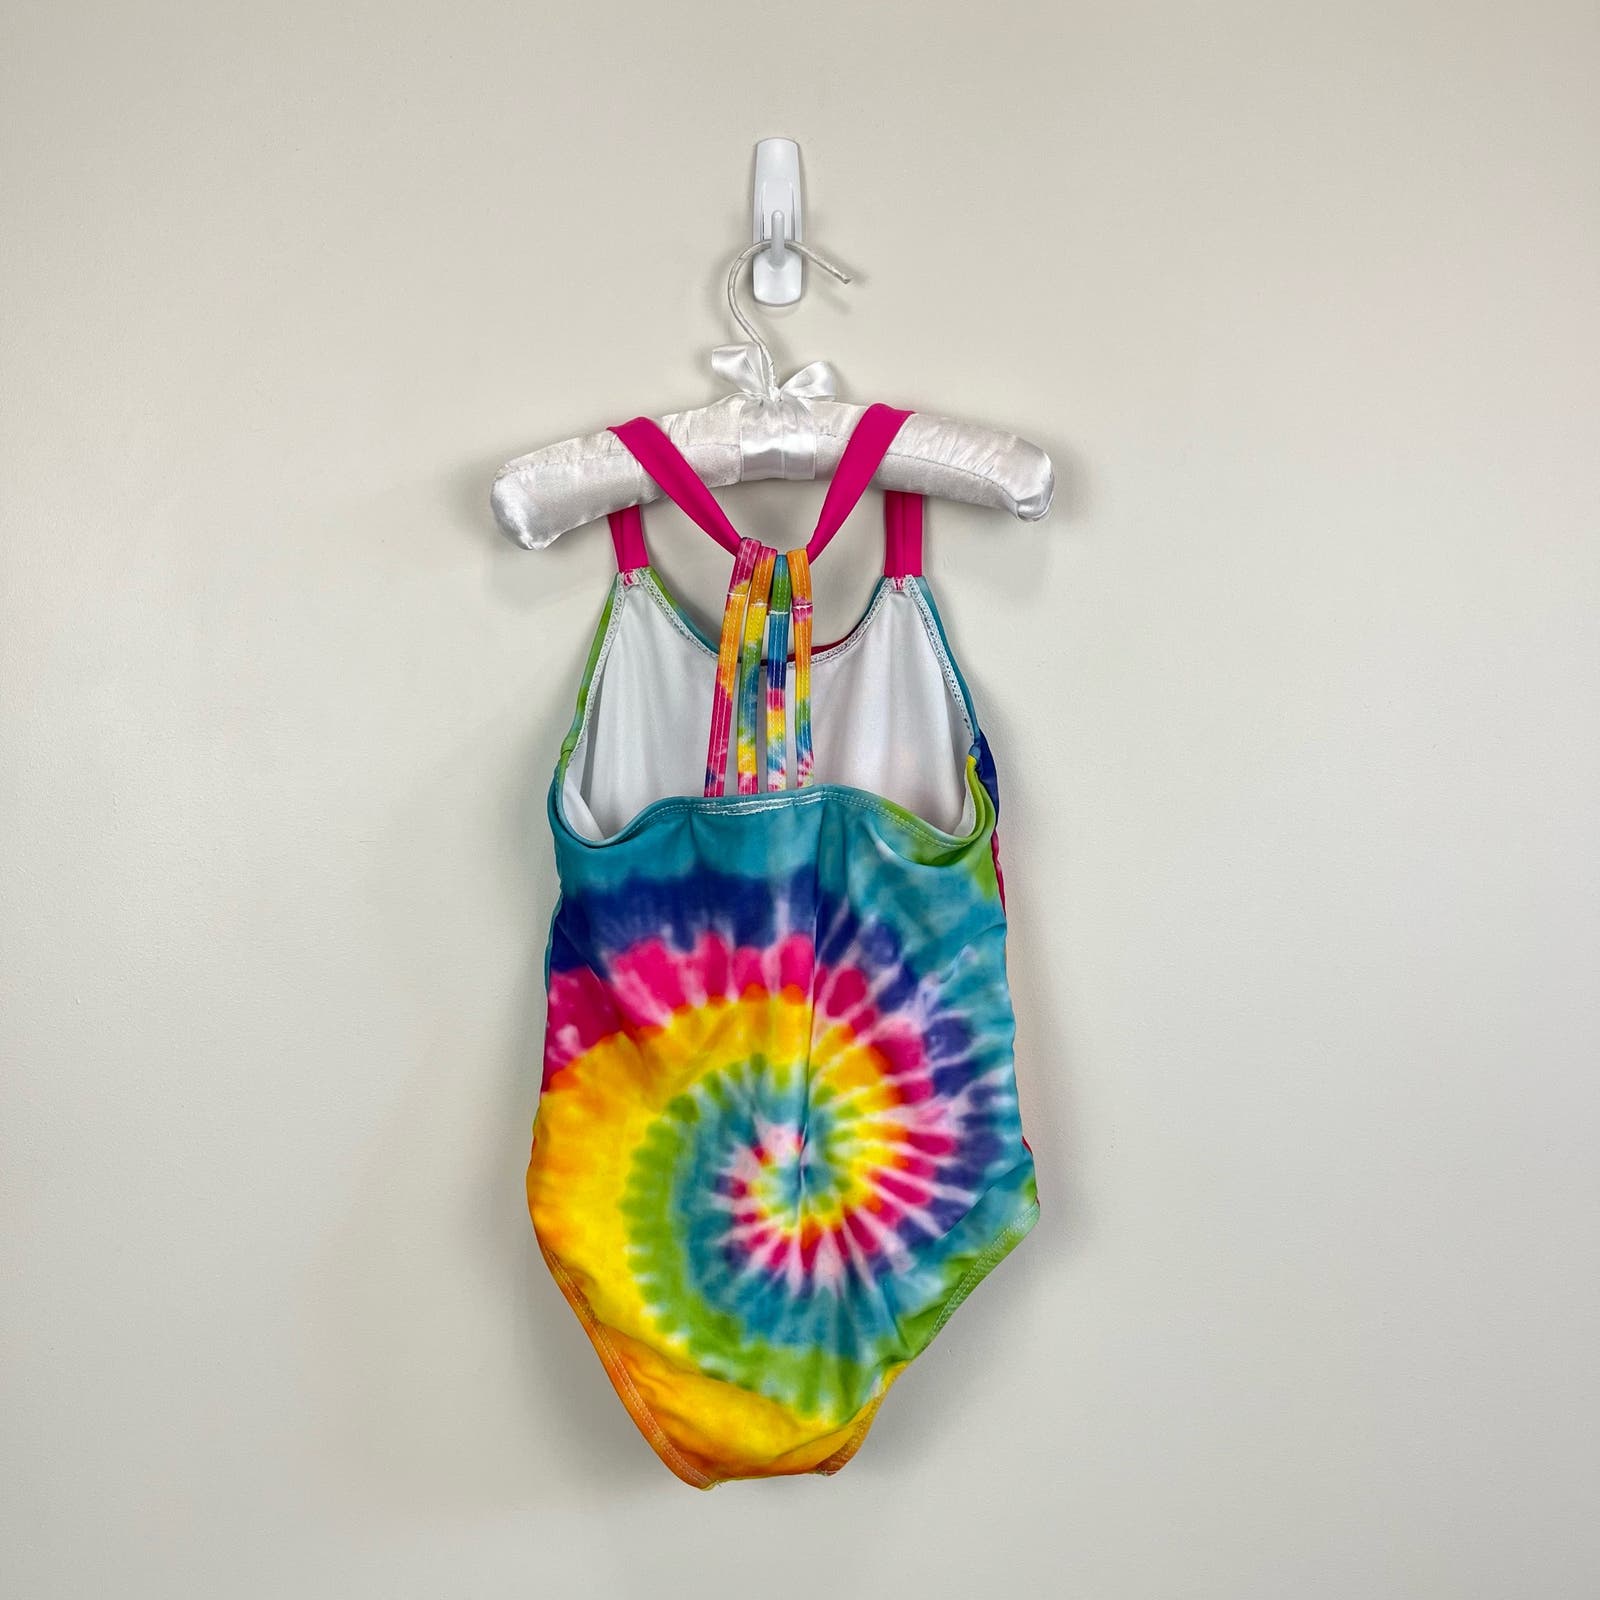 Dreamworks Trolls Tie Dye Bathing Suit Small